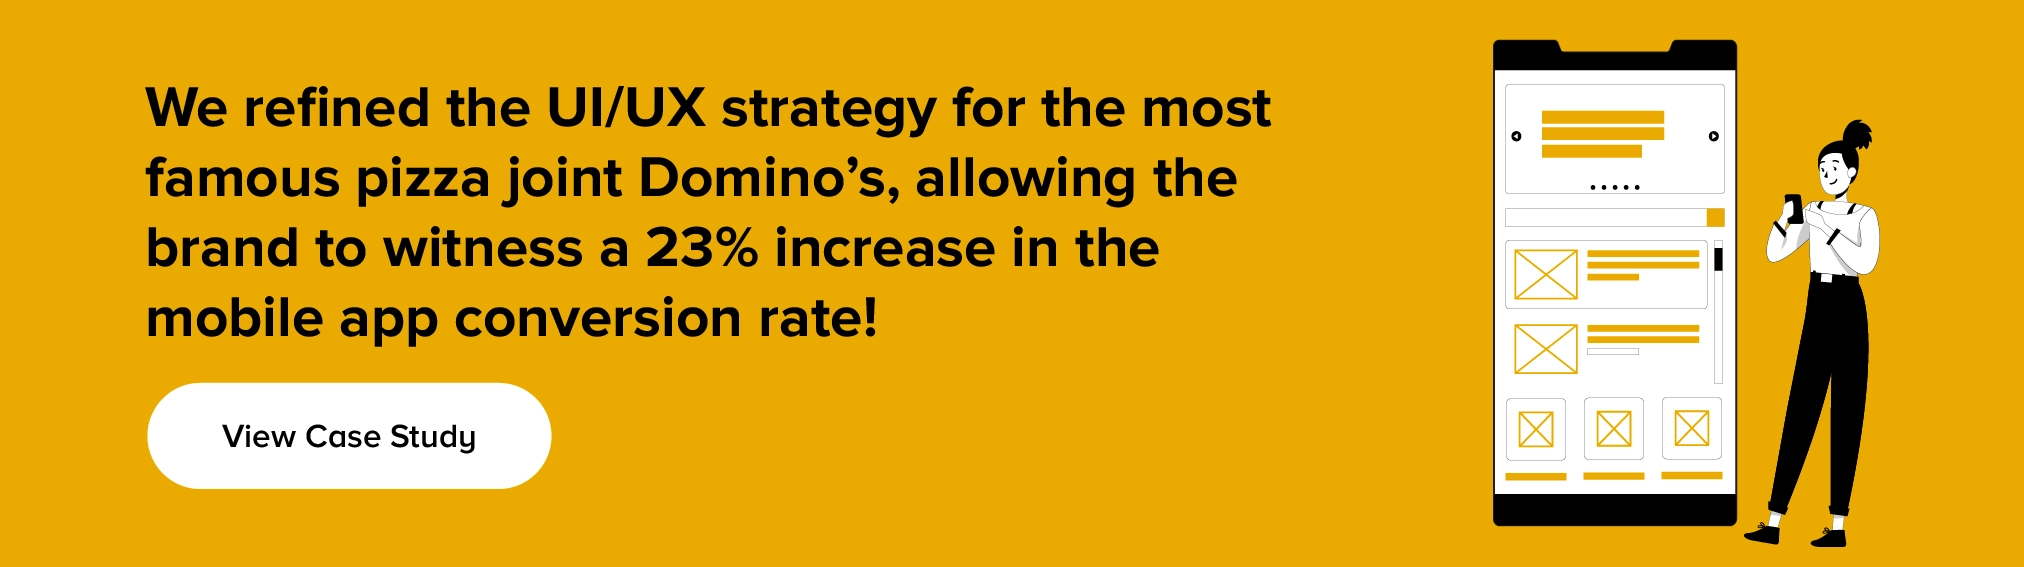 Узнайте, как мы усовершенствовали стратегию UI/UX для пиццерии Domino's.